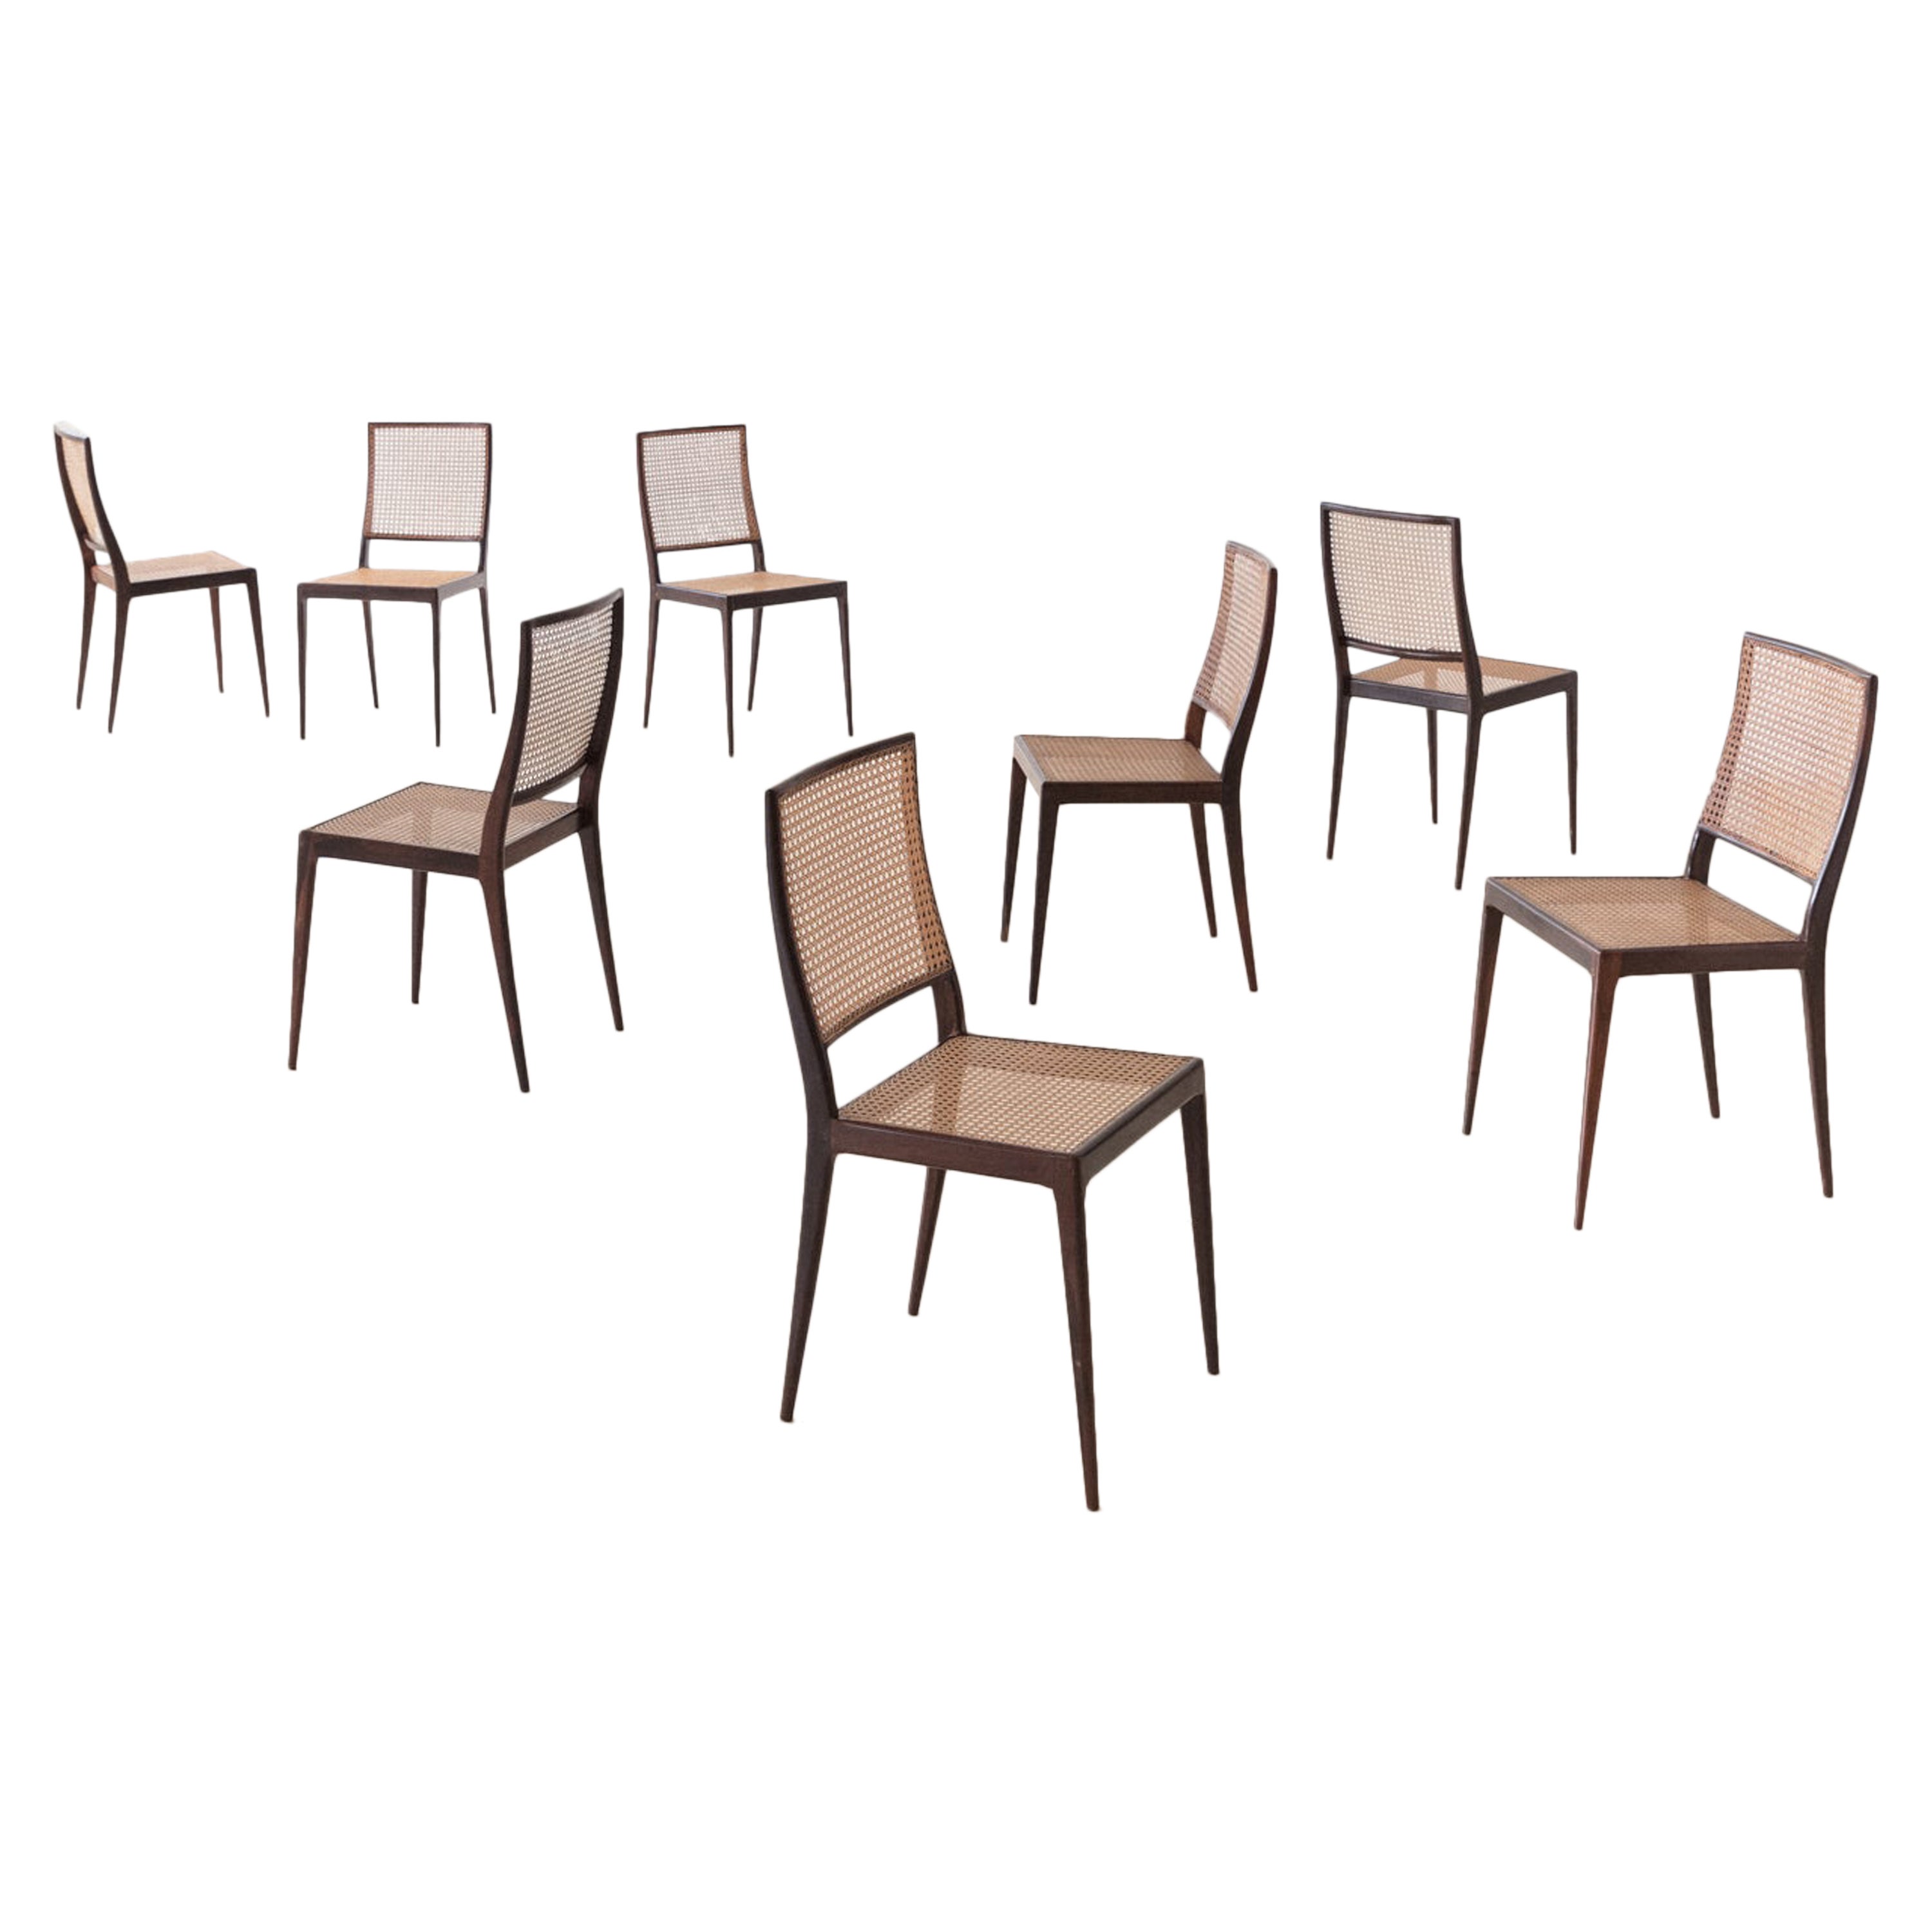 Set von 8 Unilabor-Stühlen MT 552, Geraldo de Barros, 1960er Jahre, brasilianisches Design